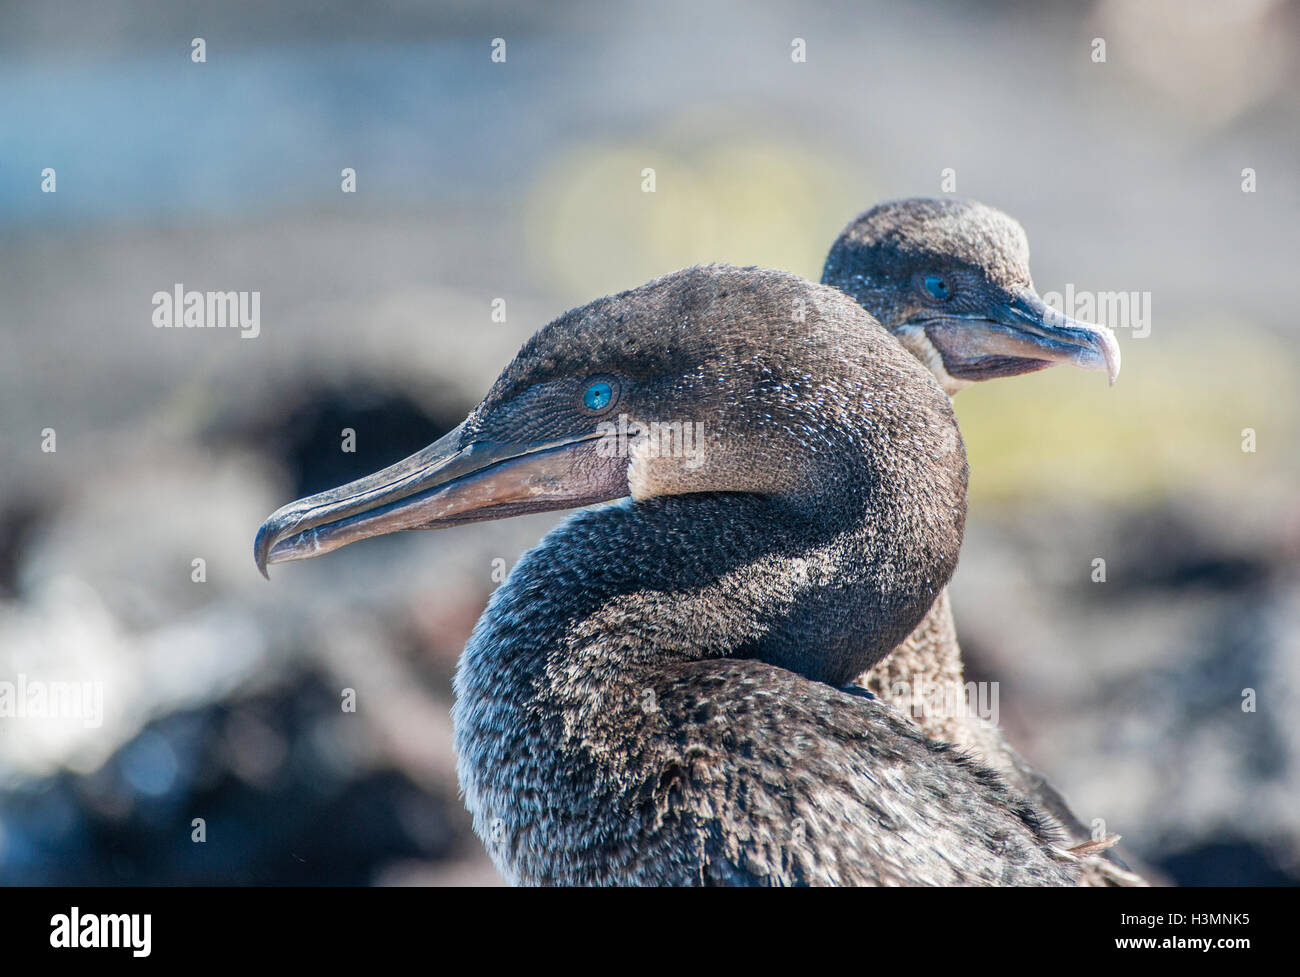 Ecuador, Islas Galápagos, Isla Isabel, perfil retrato de cormoranes no voladores (Nannopterum harrisi) en Punta Moreno Foto de stock